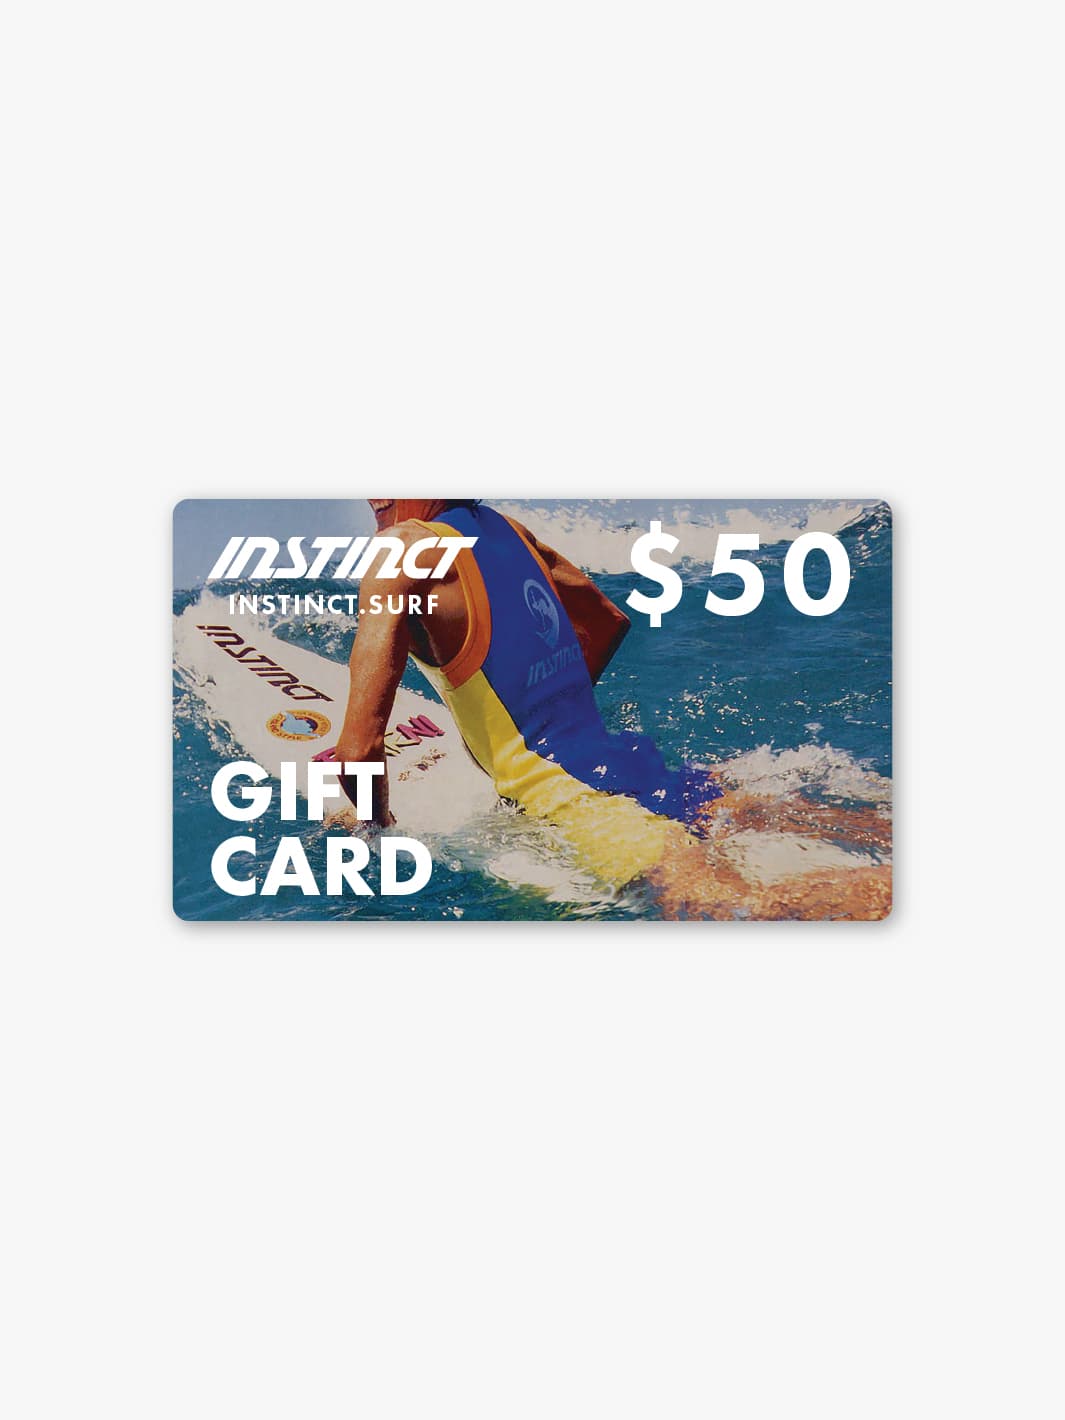 $50 instinct gift card